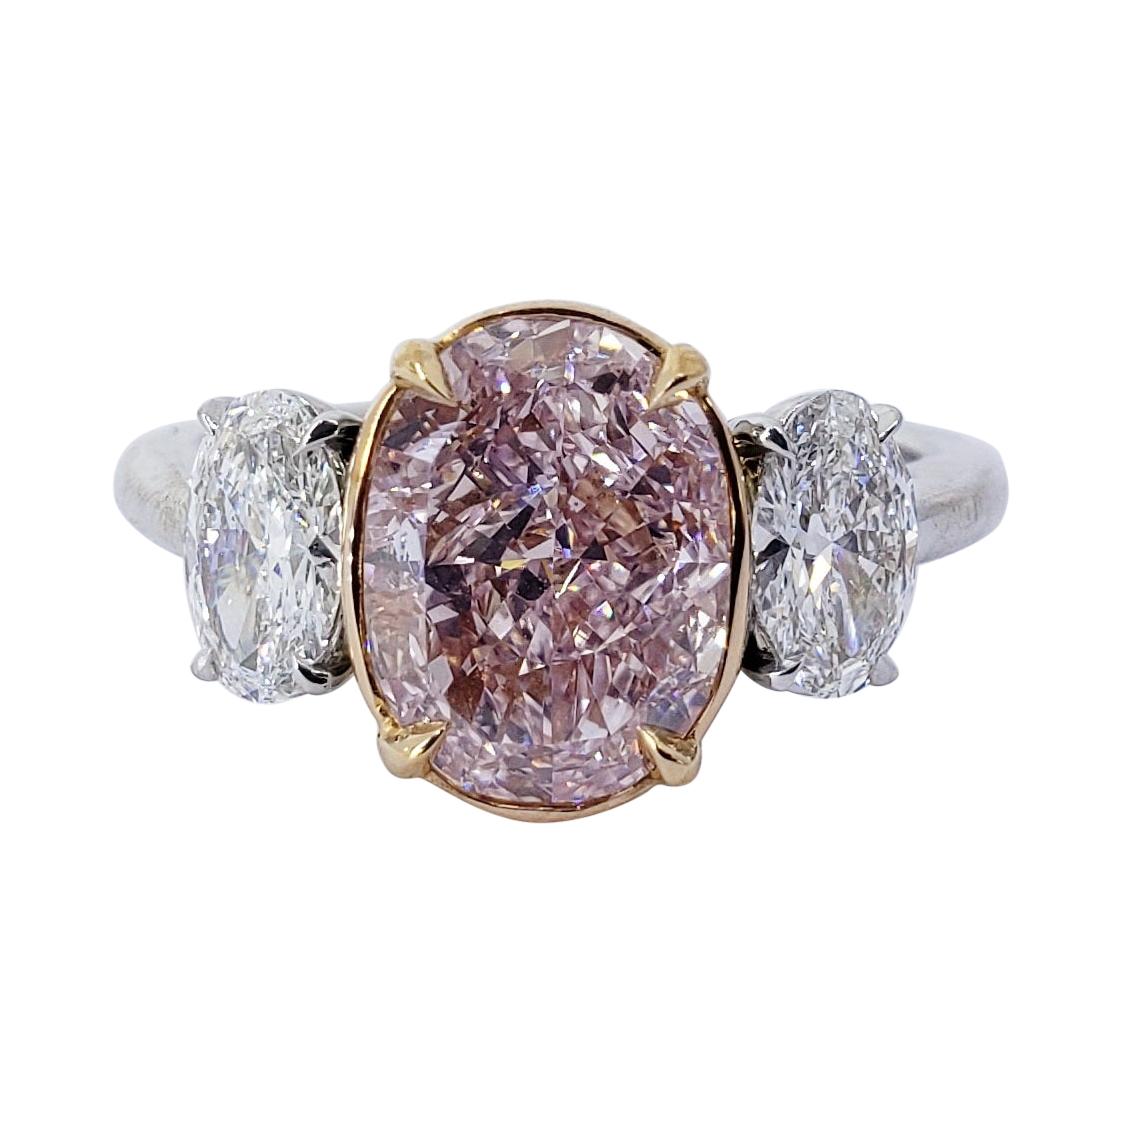 David Rosenberg 2.67 Carat Oval Fancy Pink Purple GIA Diamond Engagement Ring